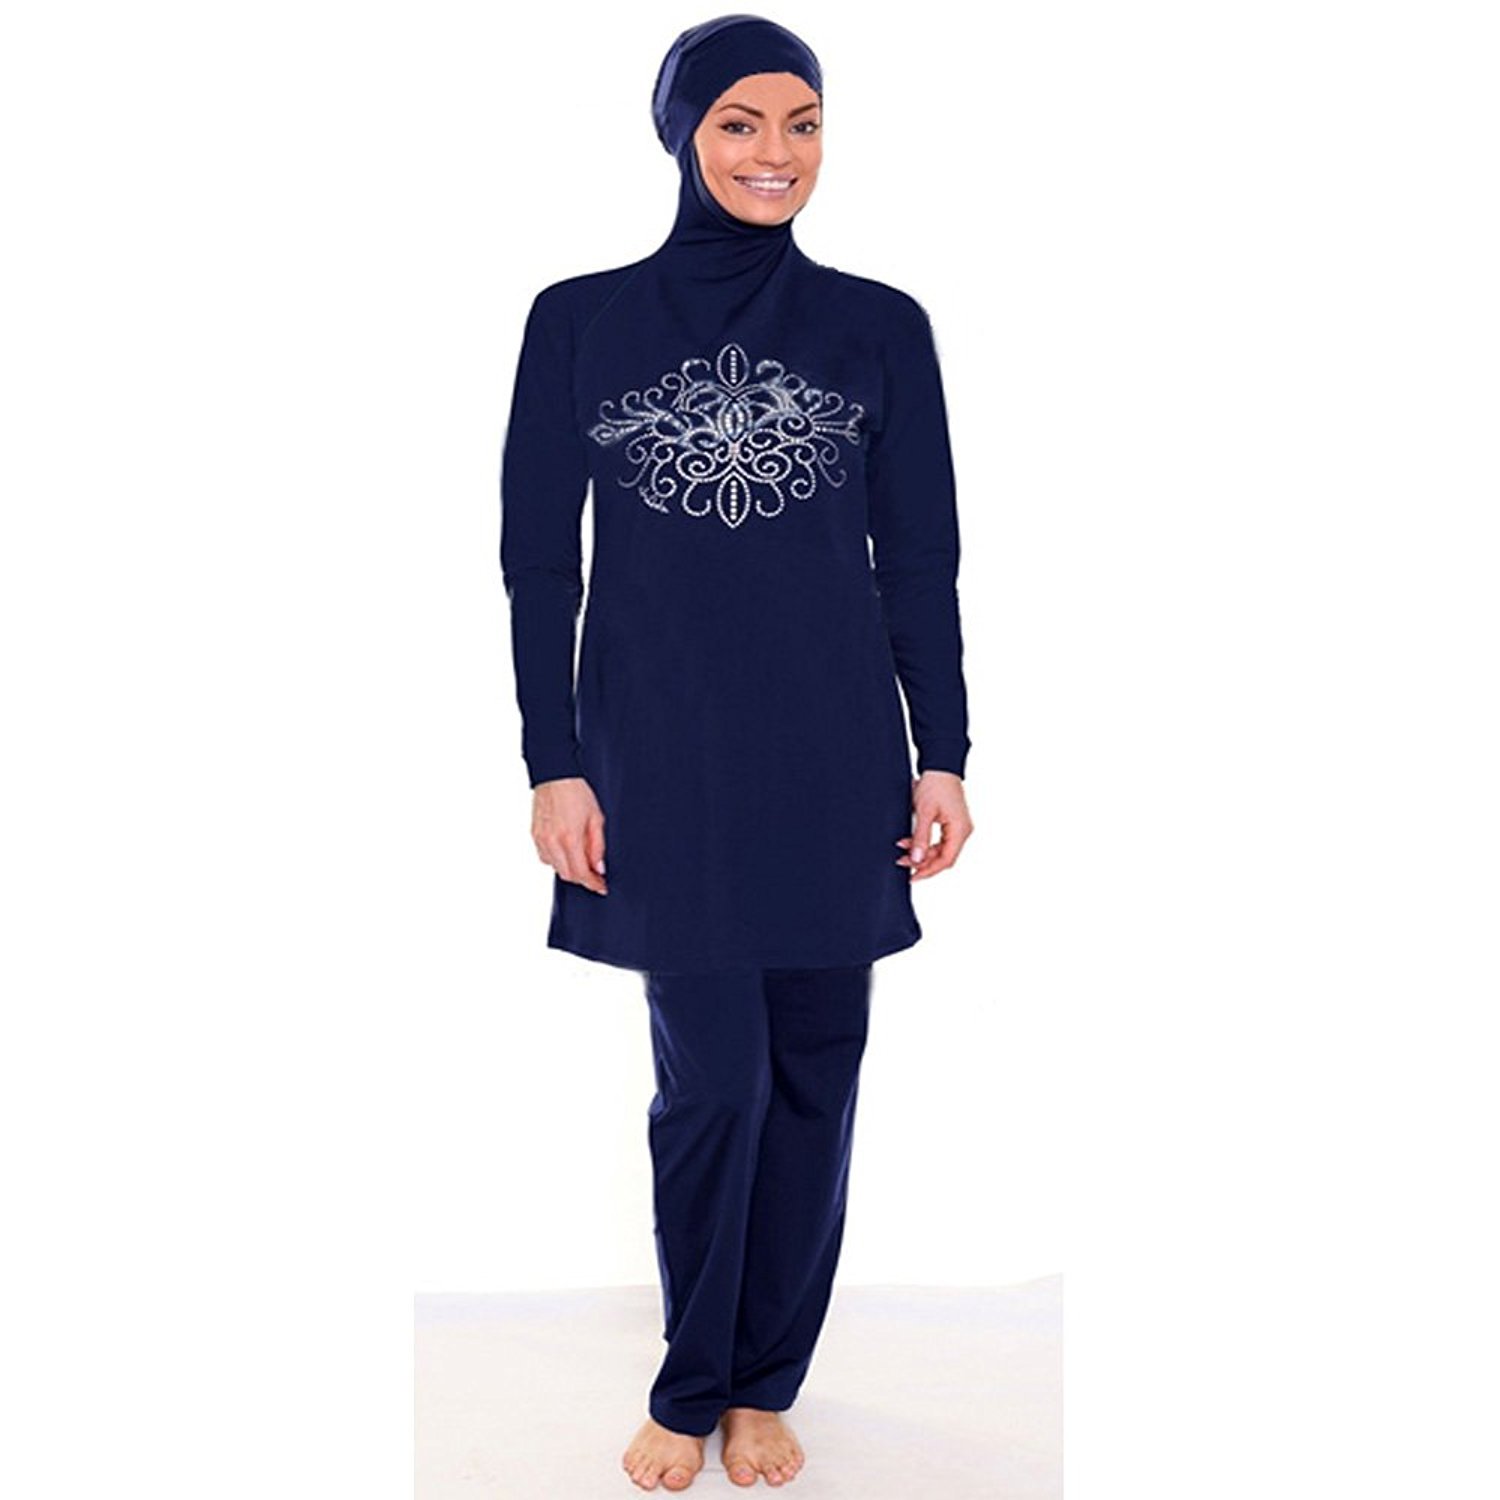 Купальный костюм для мусульманок. Женский мусульманский костюм для купания.